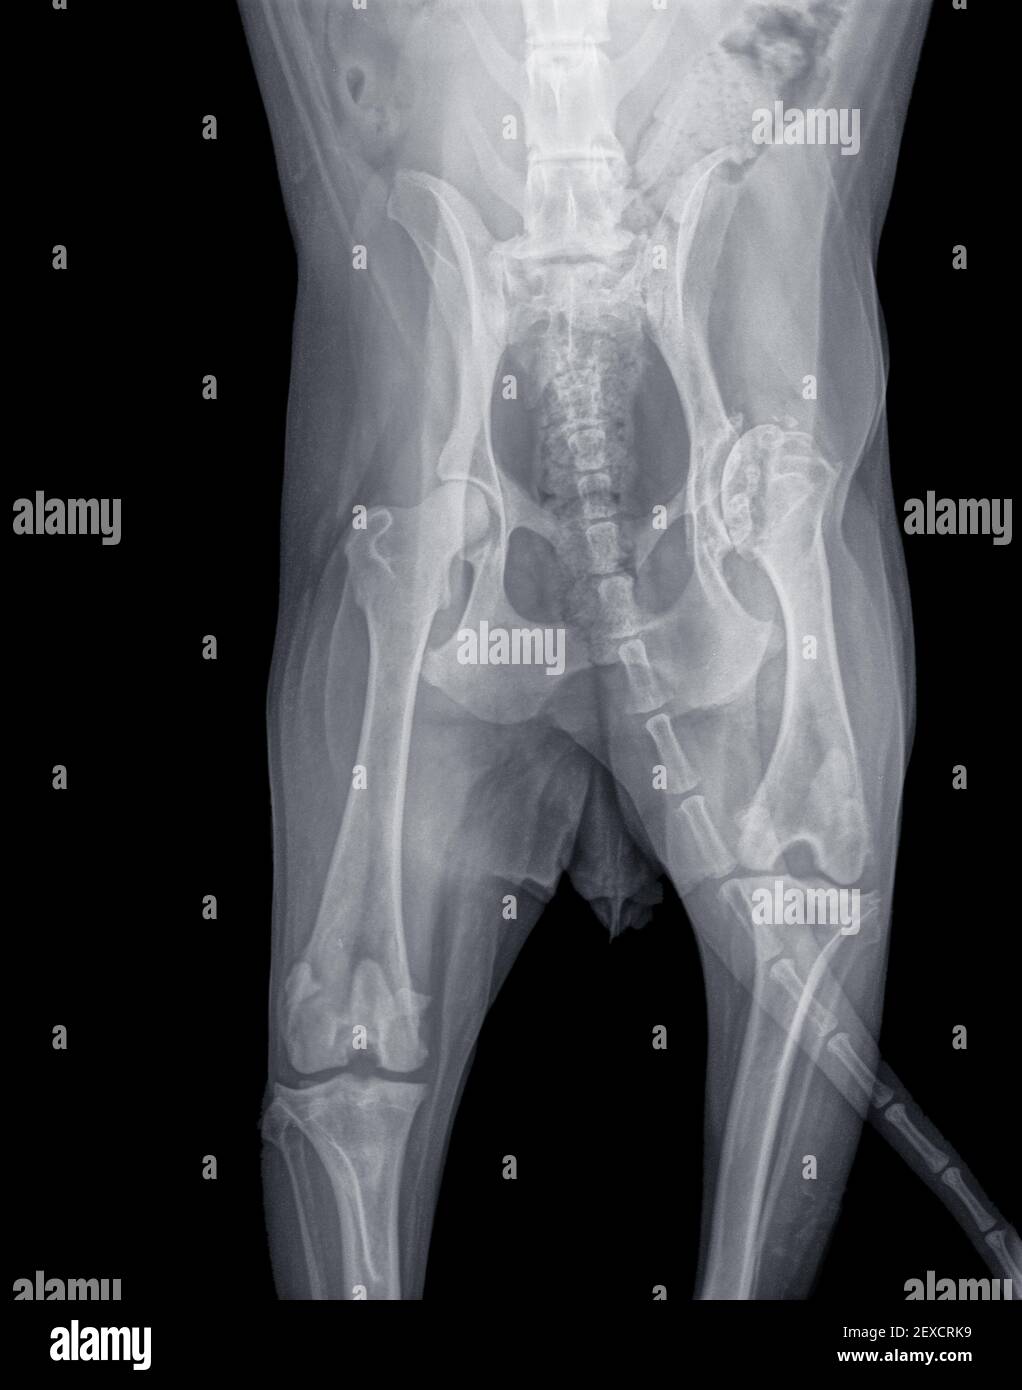 Röntgenaufnahme mit schwerer Hüftdysplasie und Osteoarthritis der rechten Hüfte und Knochenauflösung im Oberschenkelkopf eines Hundes. Der rechte Oberschenkel ist viel kürzer Stockfoto